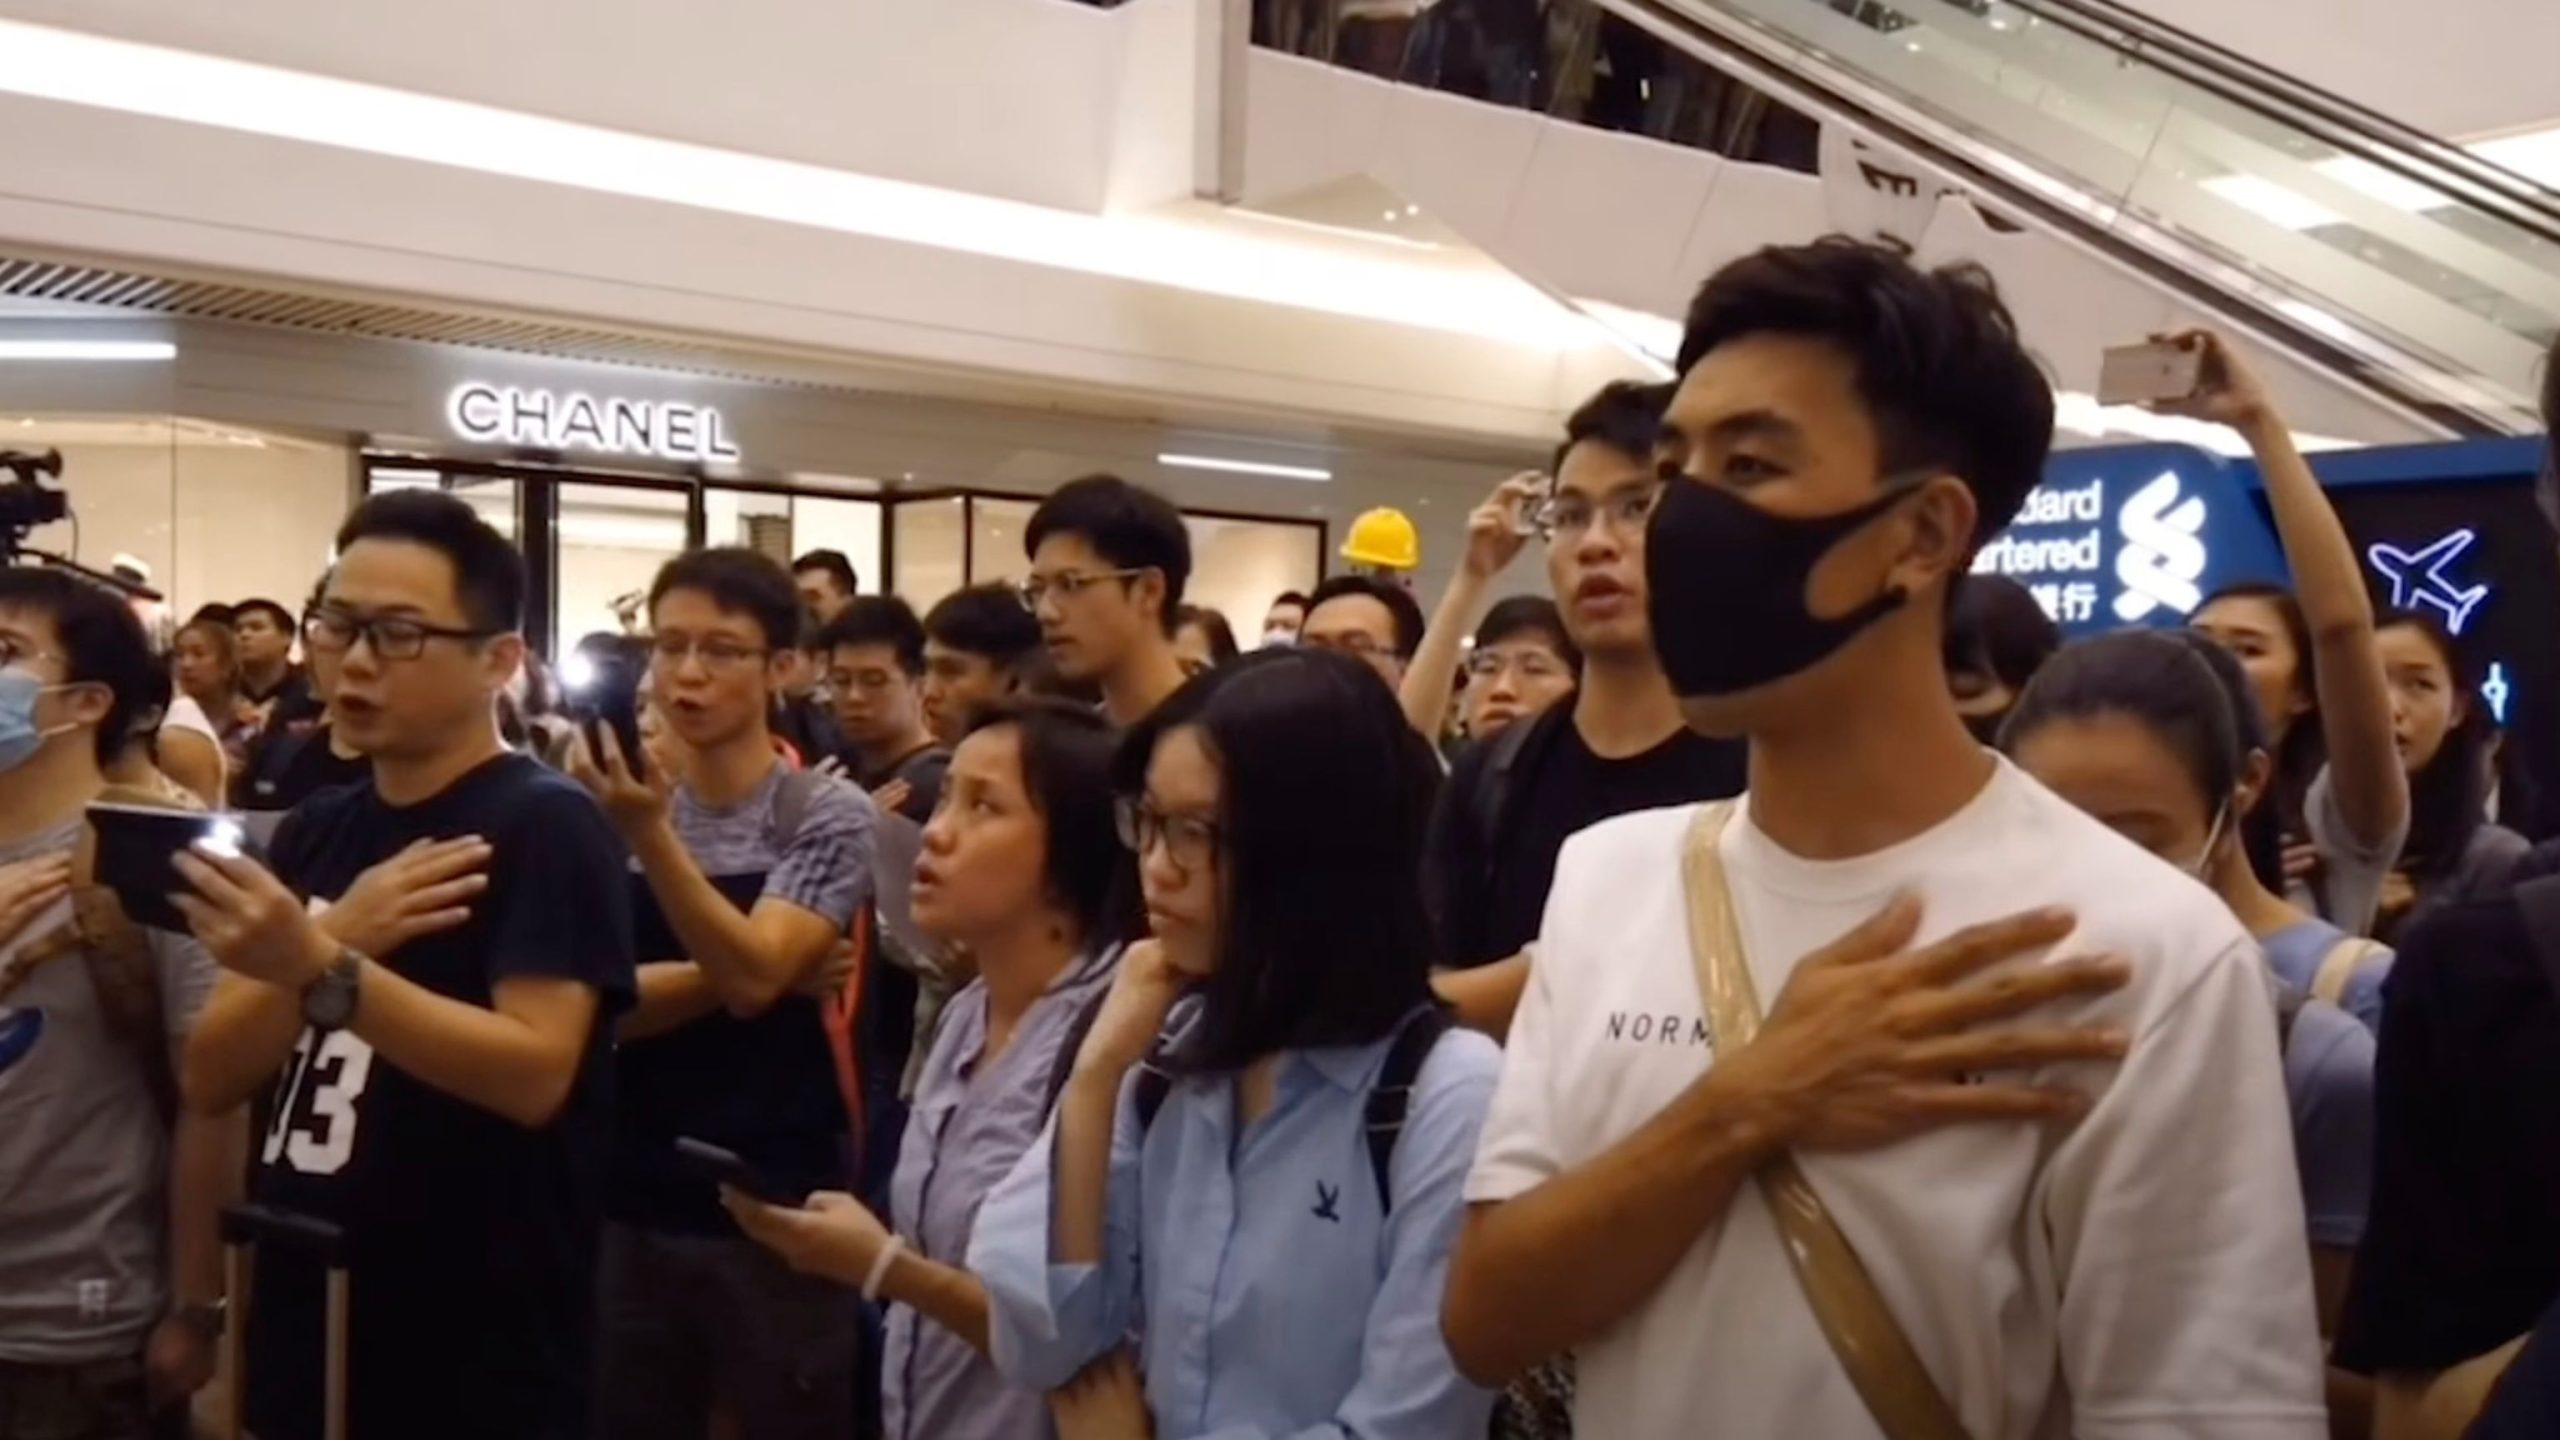 Hong Kong’s Anthem Ban Sparks International Free Speech Concerns